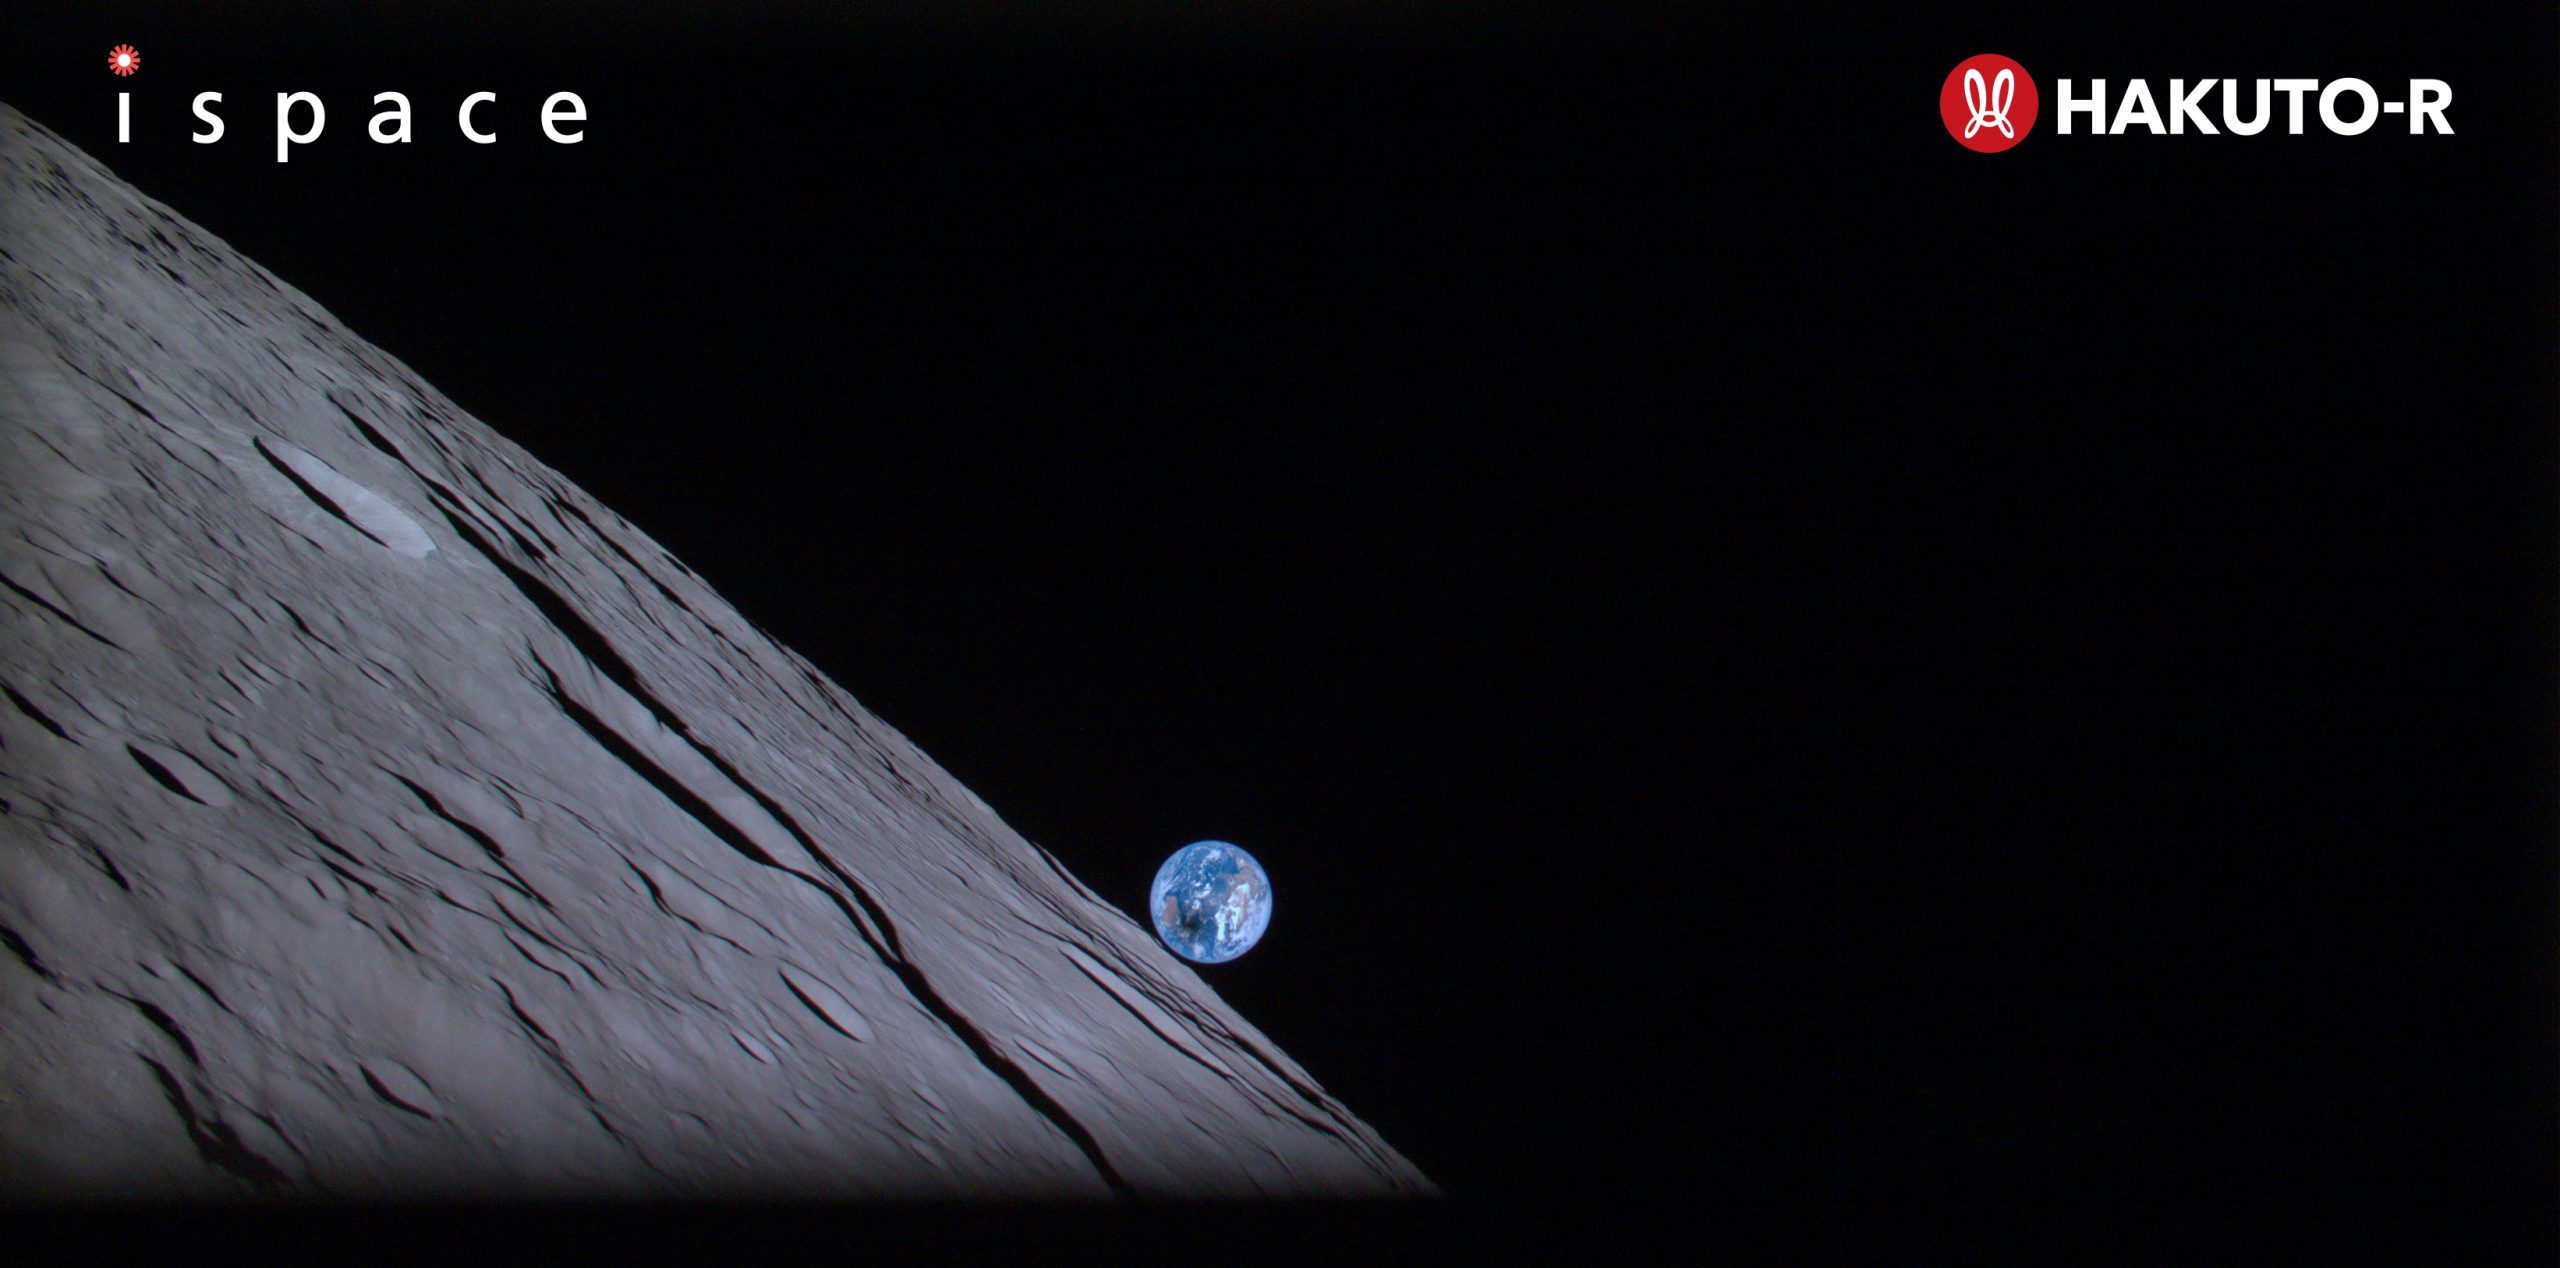 Японский лунный аппарат Hakuto-R сделал это изображение «Восхода Земли» незадолго до того, как потерял связь с центром управления полетом